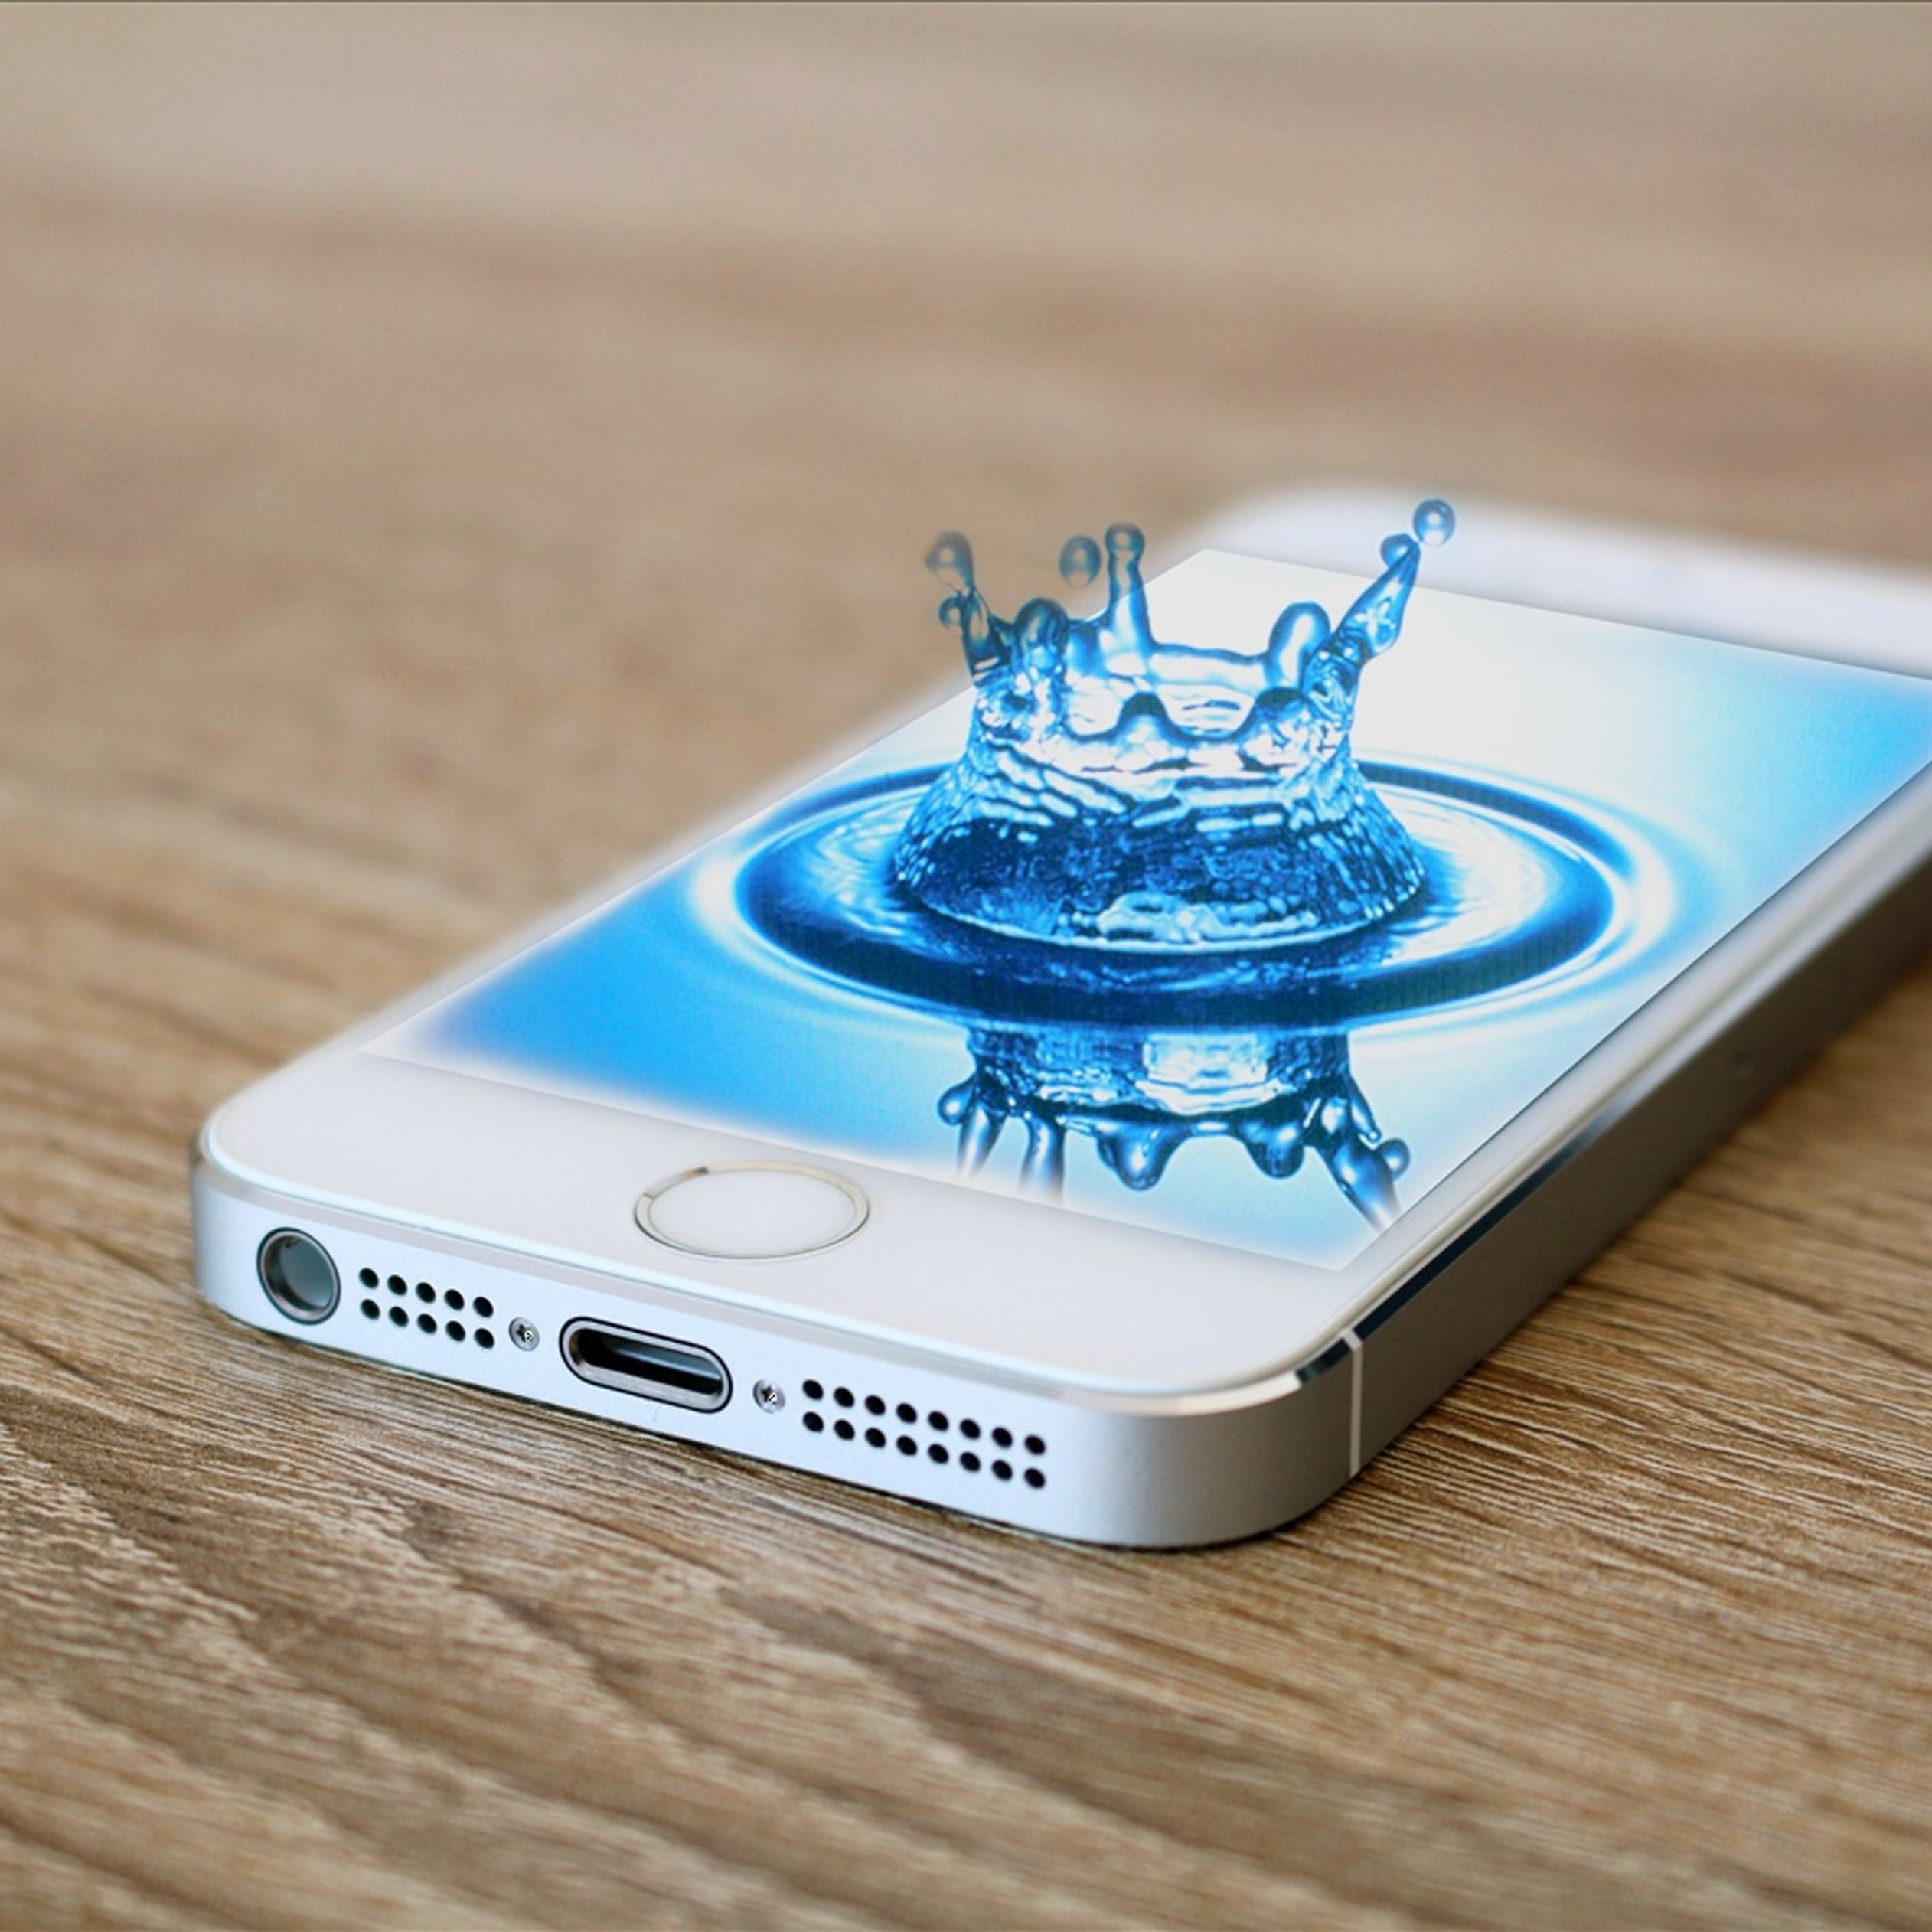 Splash water drop in iPhone 5s phone